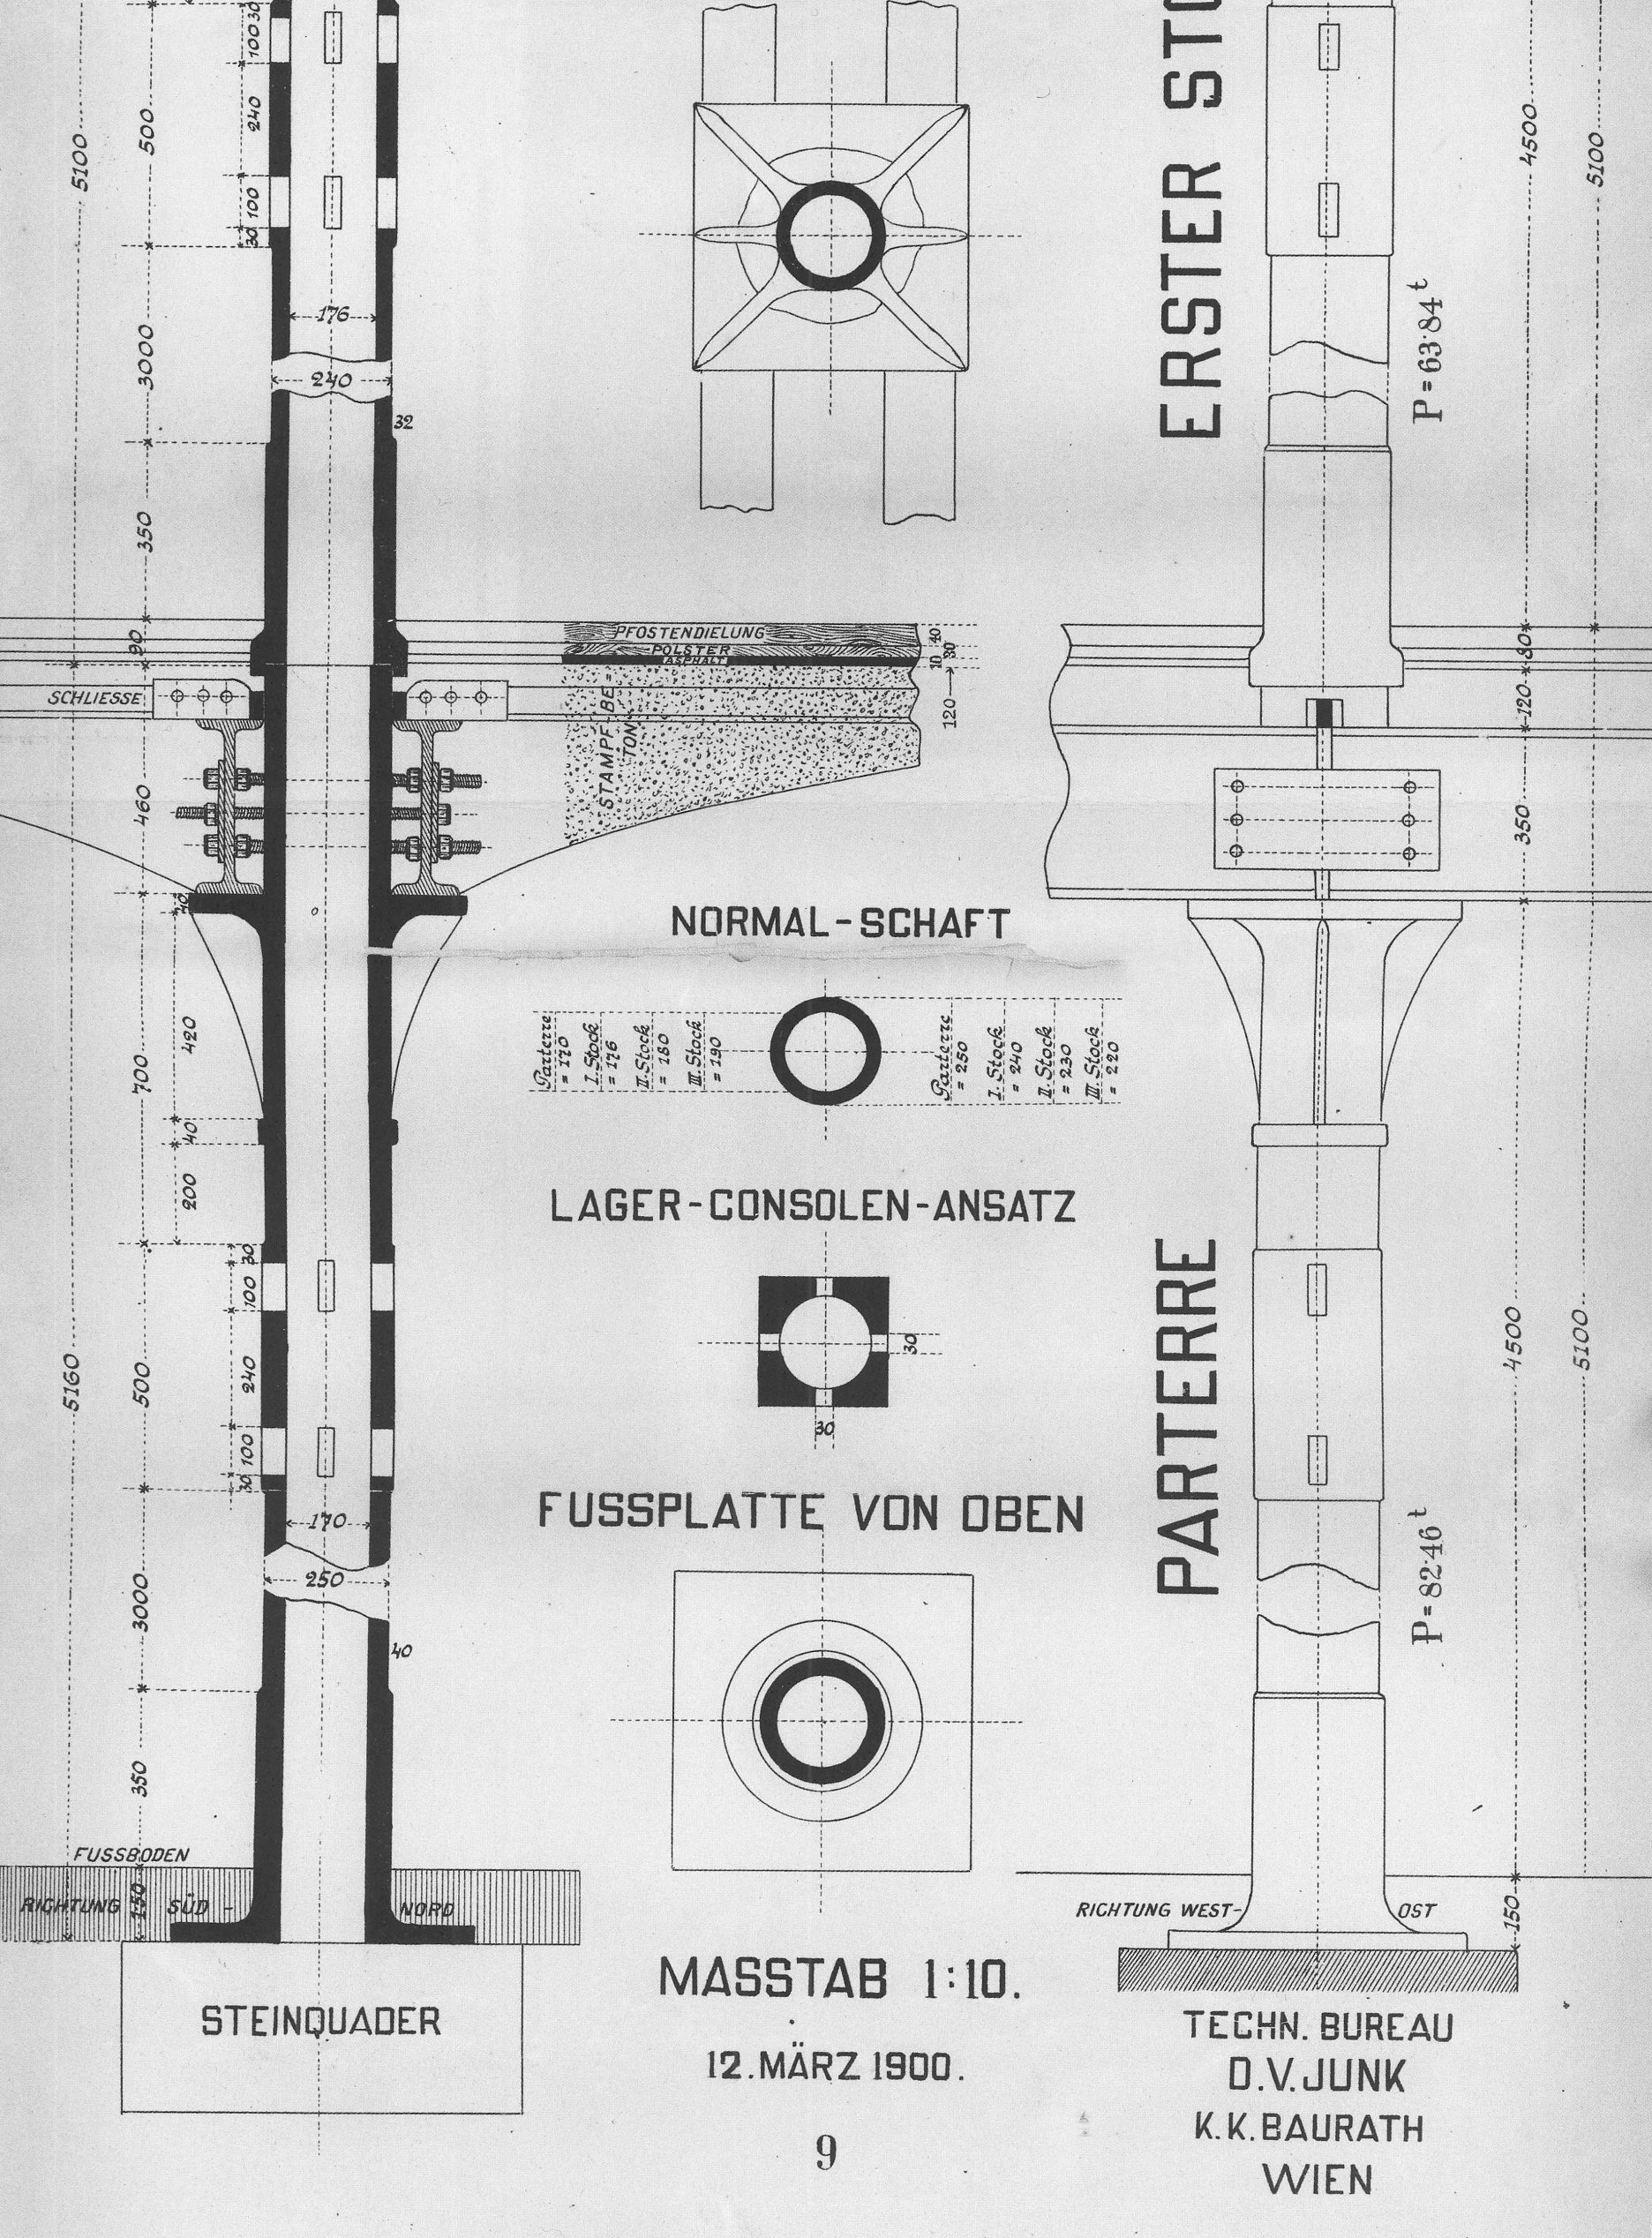 Výkres nosnej konštrukcie - pôvodný architektonický návrh. Autor D.V. Junk, Viedeň, marec 1900